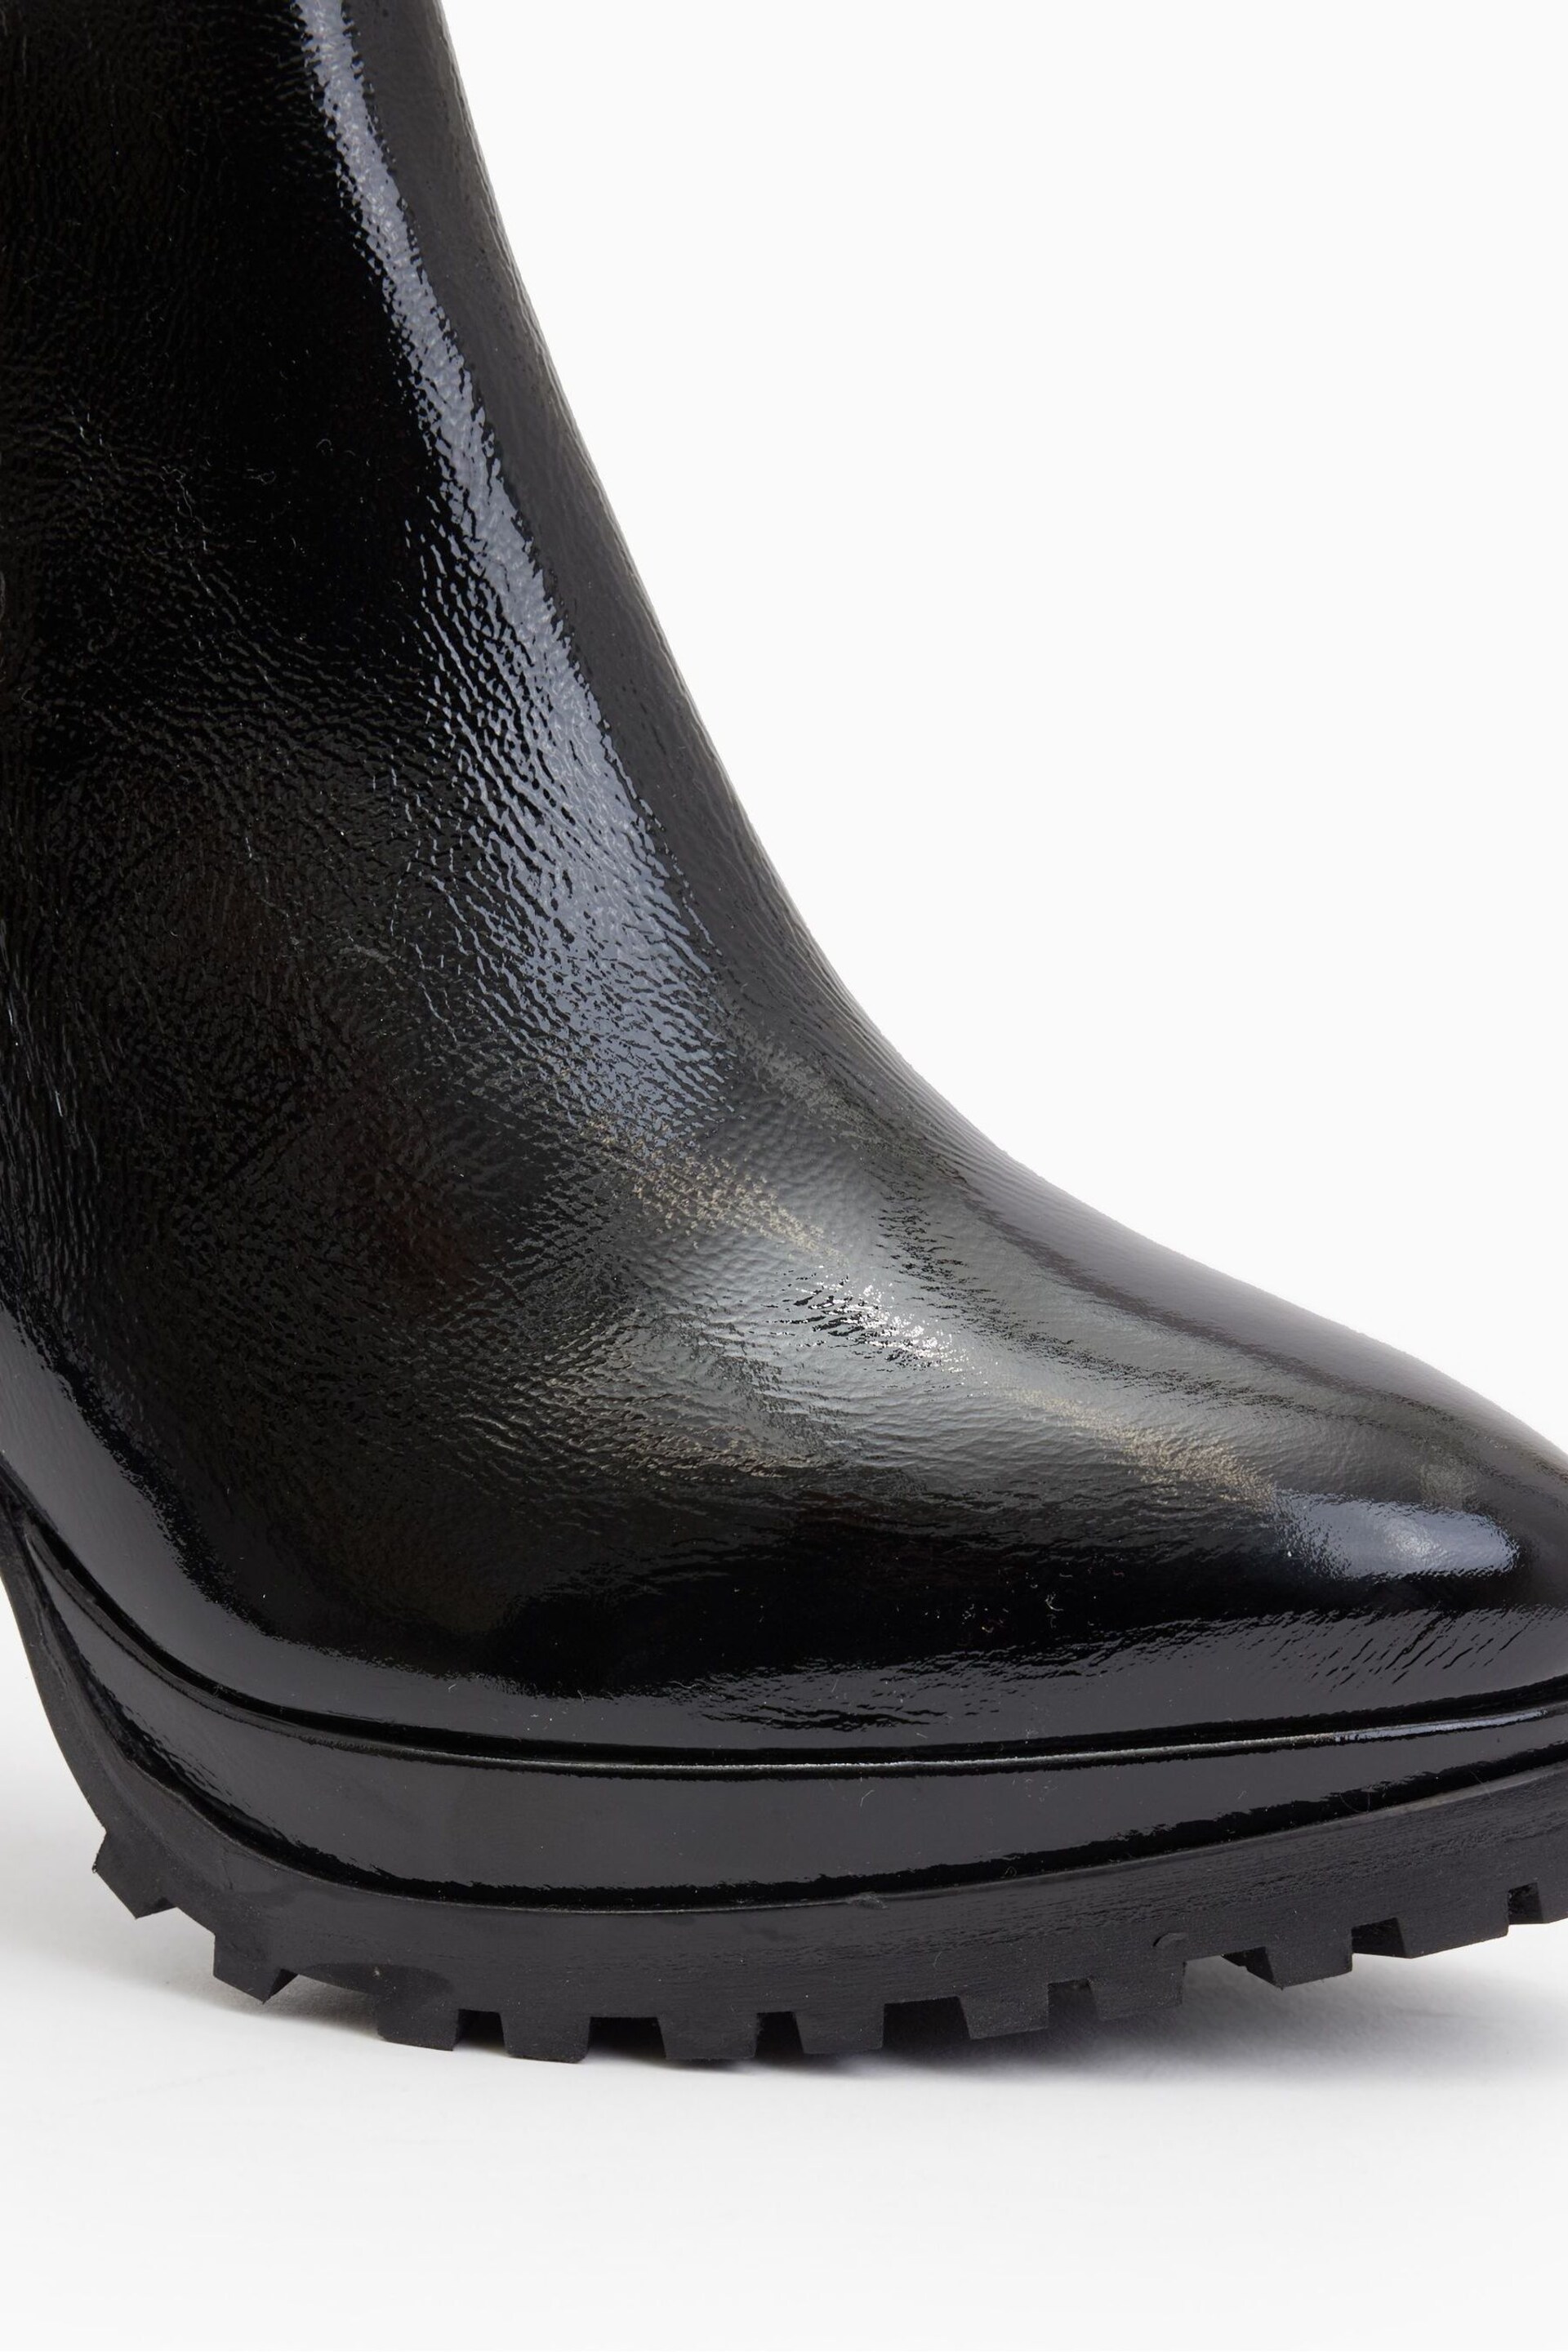 AllSaints Black Sarris Patent Boots - Image 4 of 5